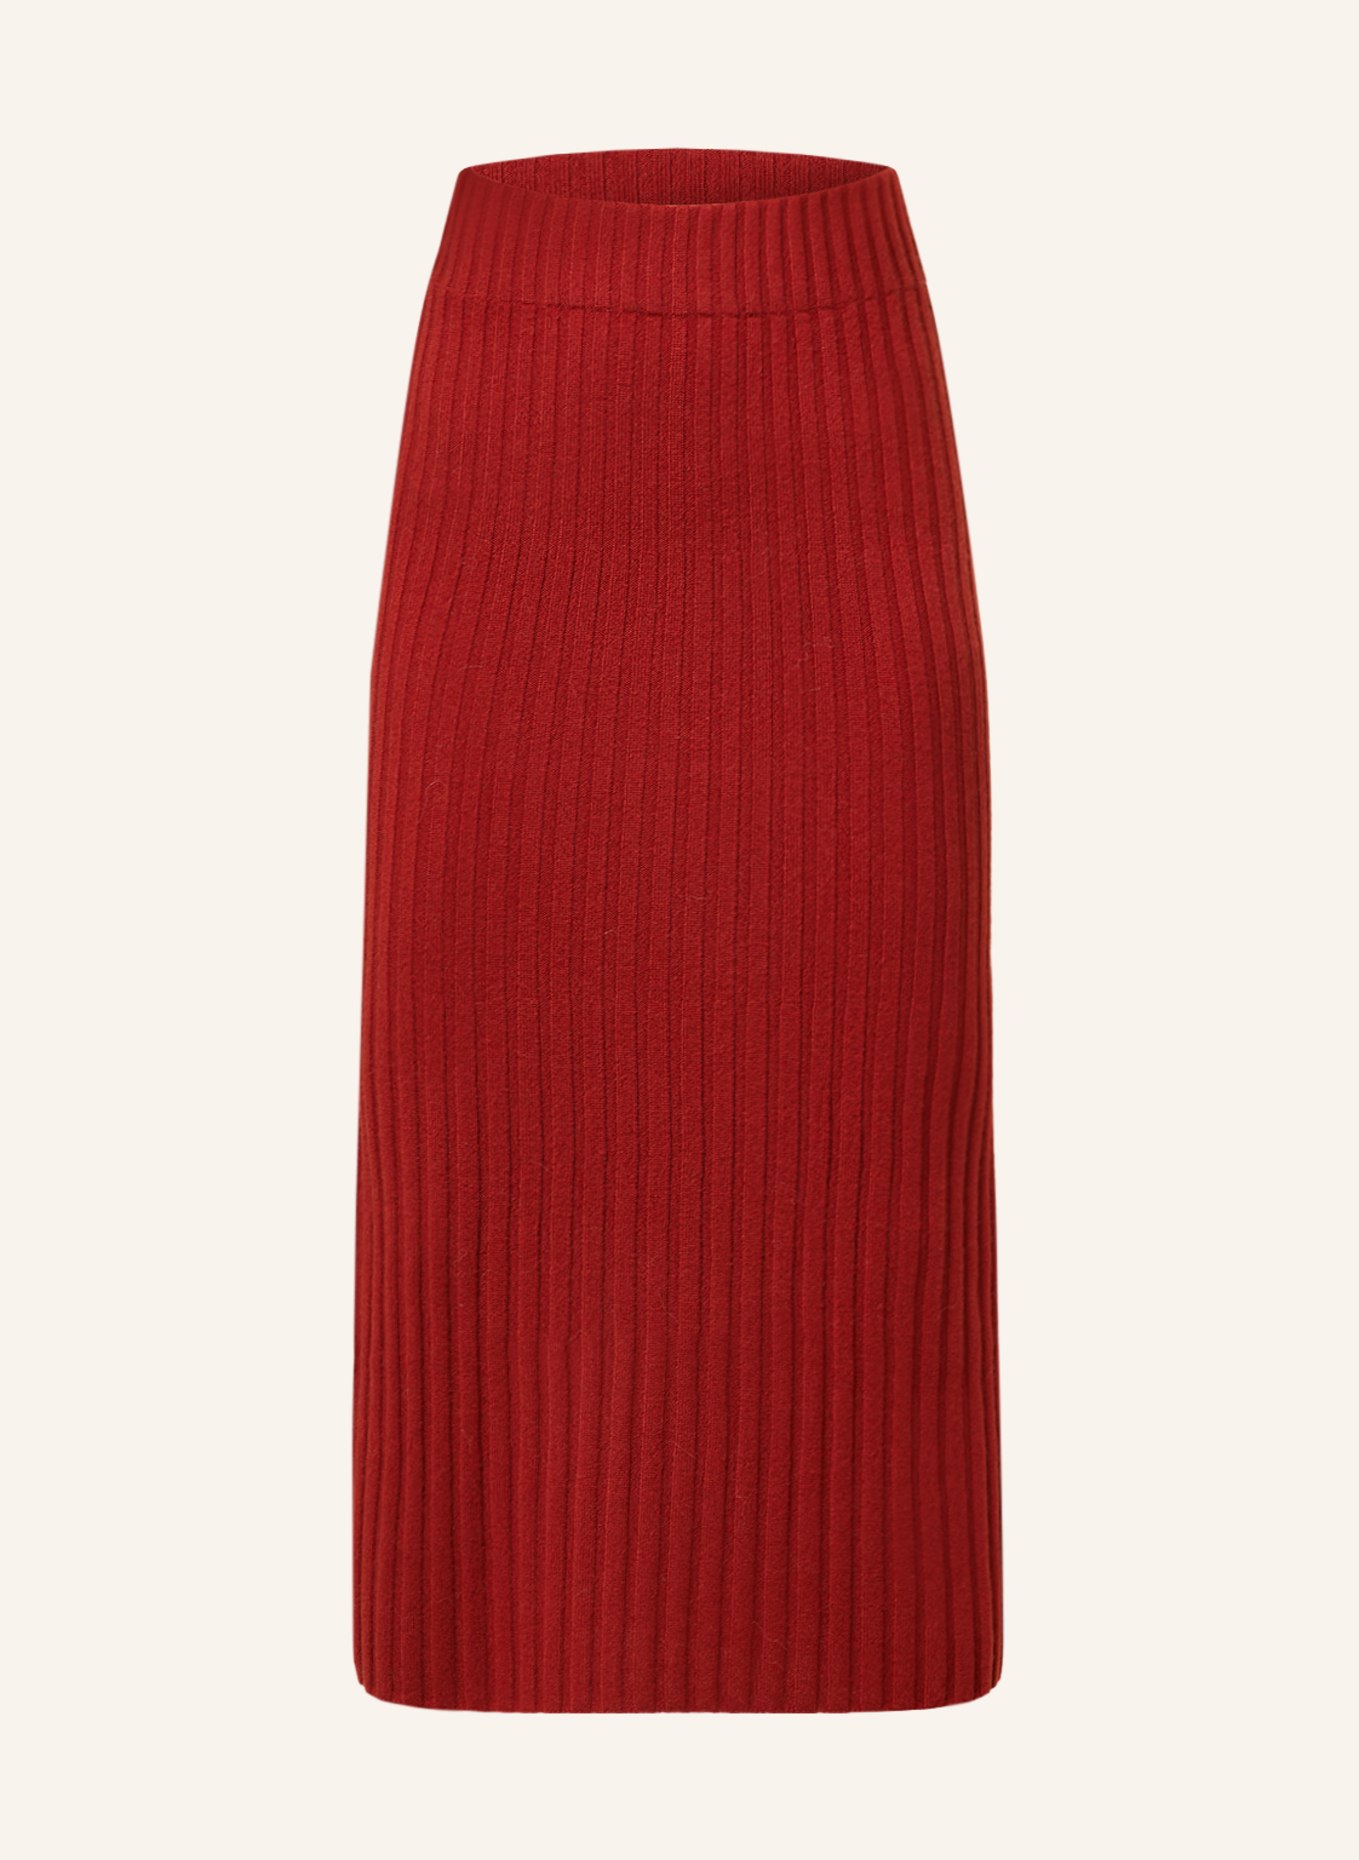 Delicatelove Knit skirt MELBOURNE made of cashmere, Color: DARK ORANGE (Image 1)